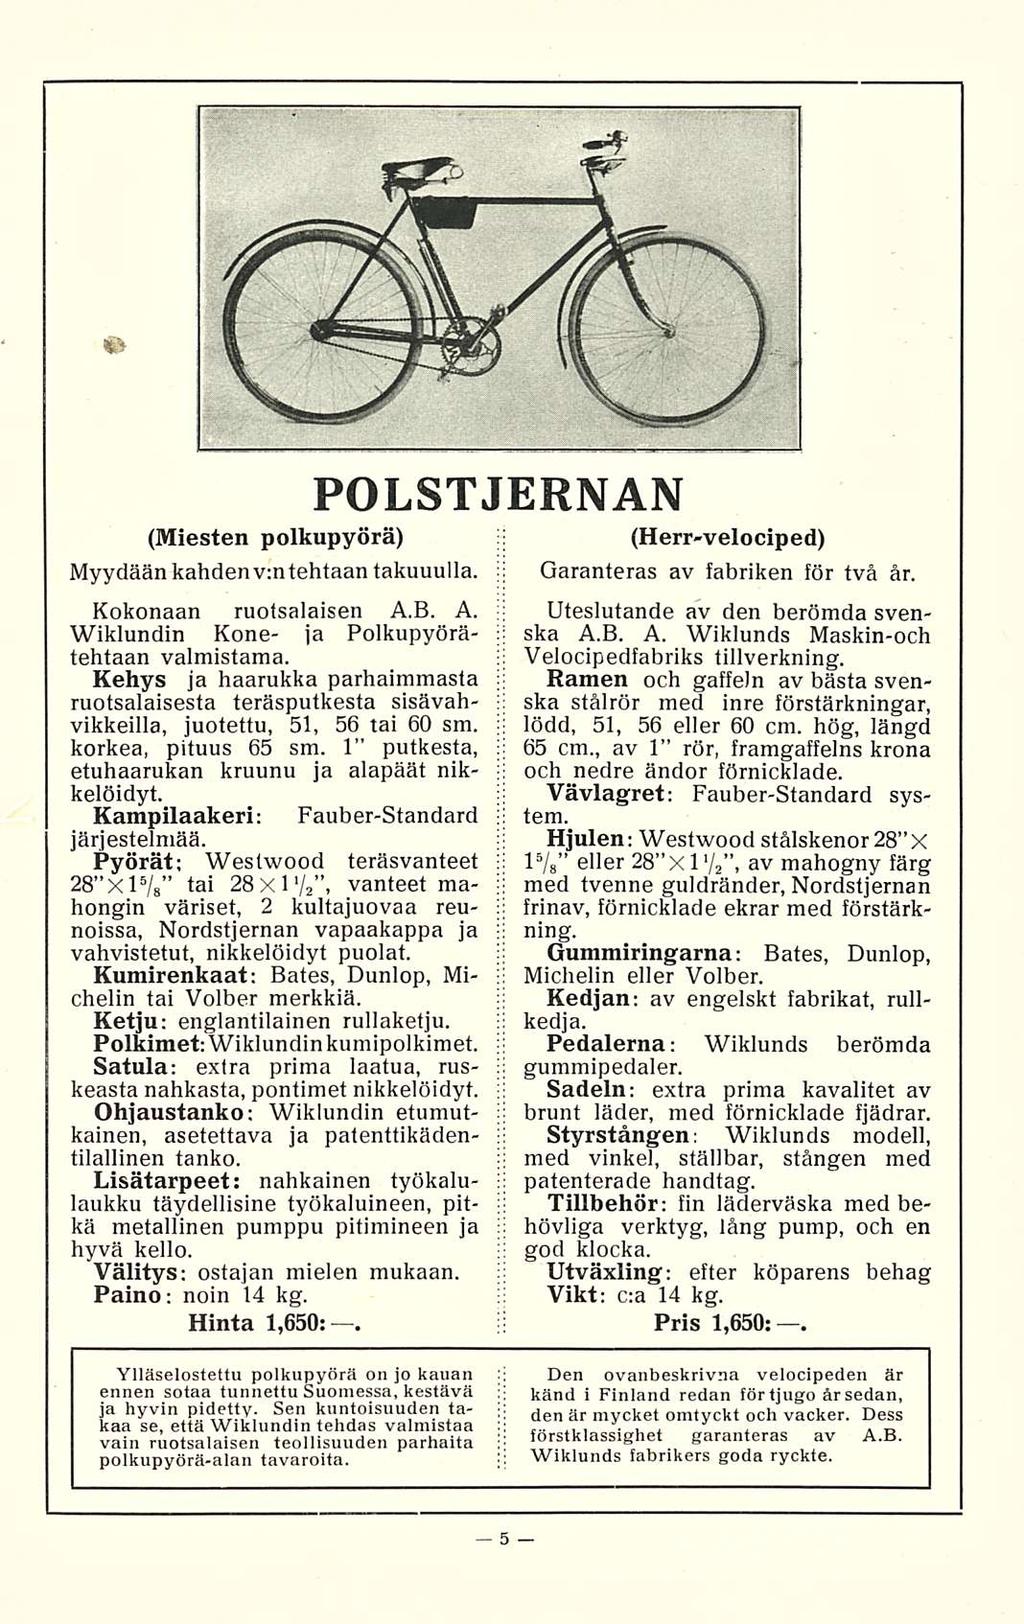 ..... (Miesten polkupyörä) Myydään kahden v:n tehtaan takuuulla. Kokonaan ruotsalaisen A.B. A. Wiklundin Kone- ja Polkupyörätehtaan valmistama.